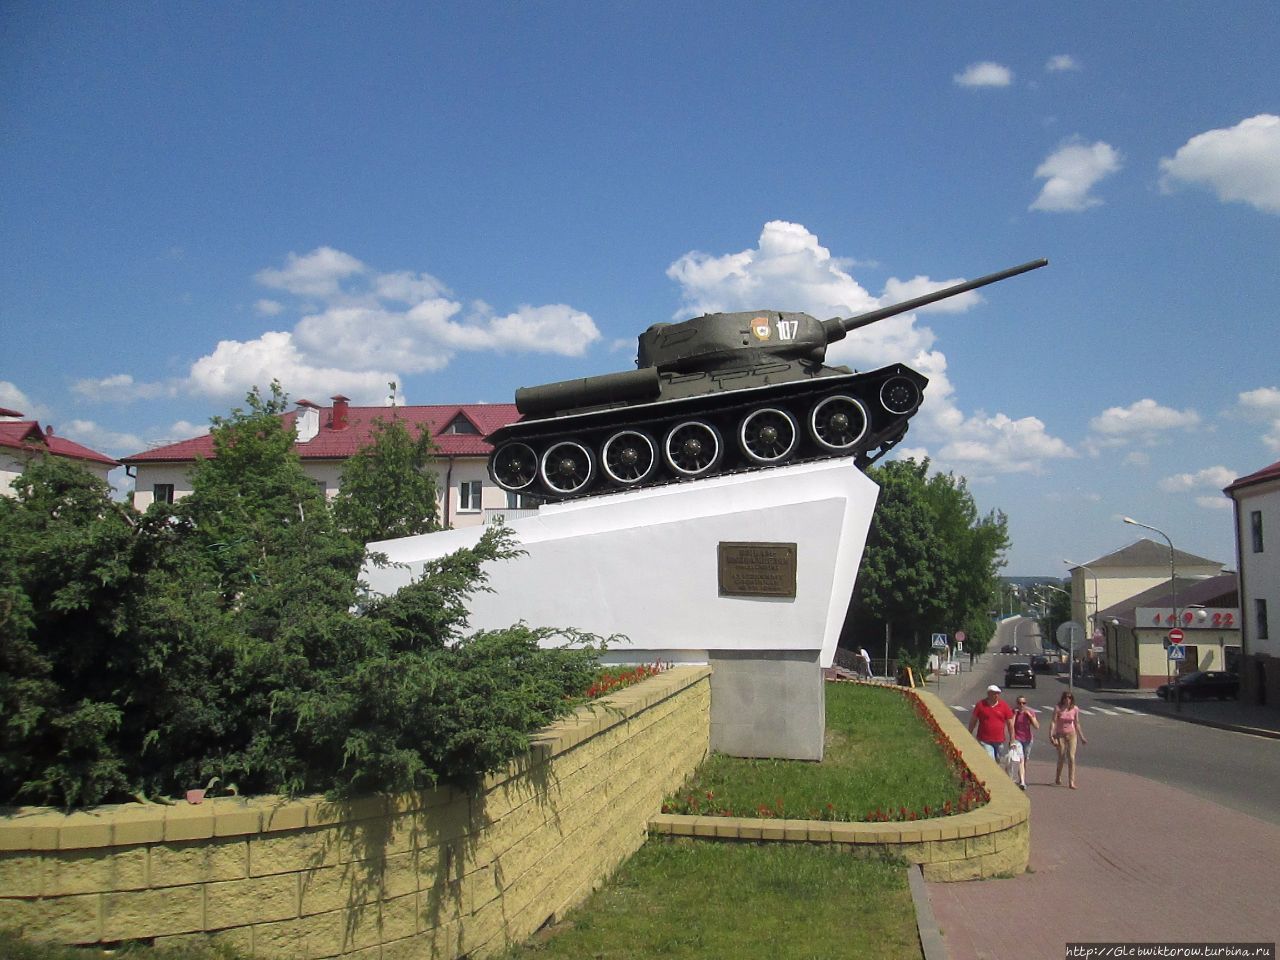 Прогулка по историческому центру Слоним, Беларусь